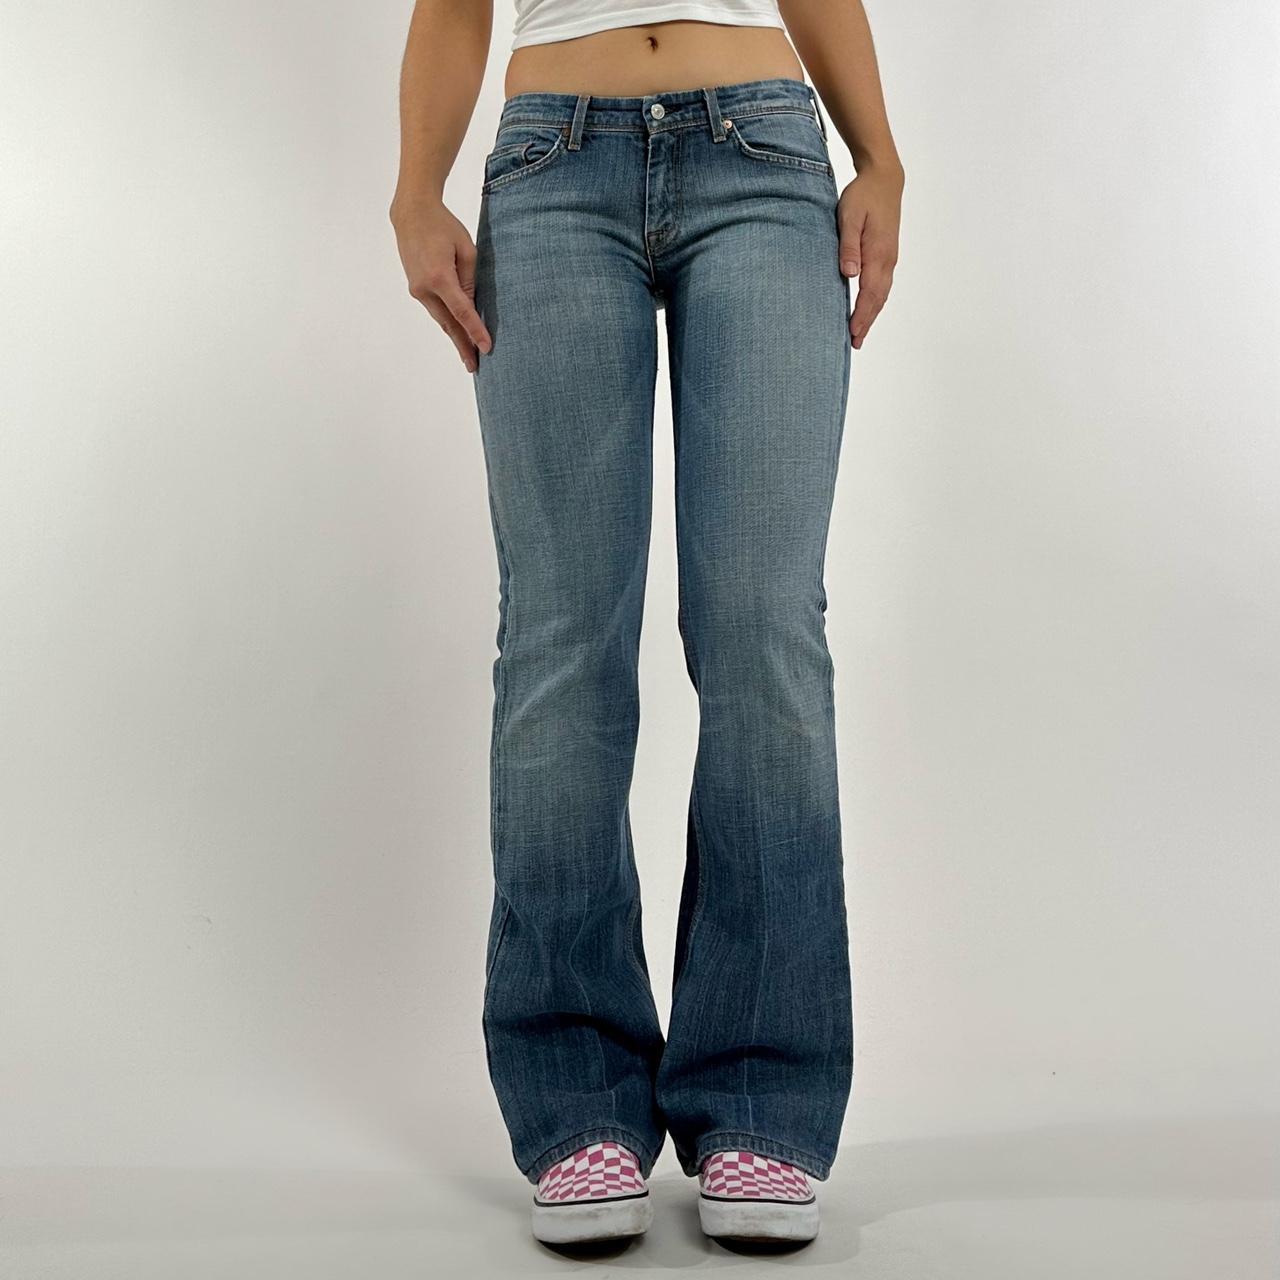 Landbrug på Teenageår Low rise jeans. Flare leg. Beaded butt pockets. 7... - Depop